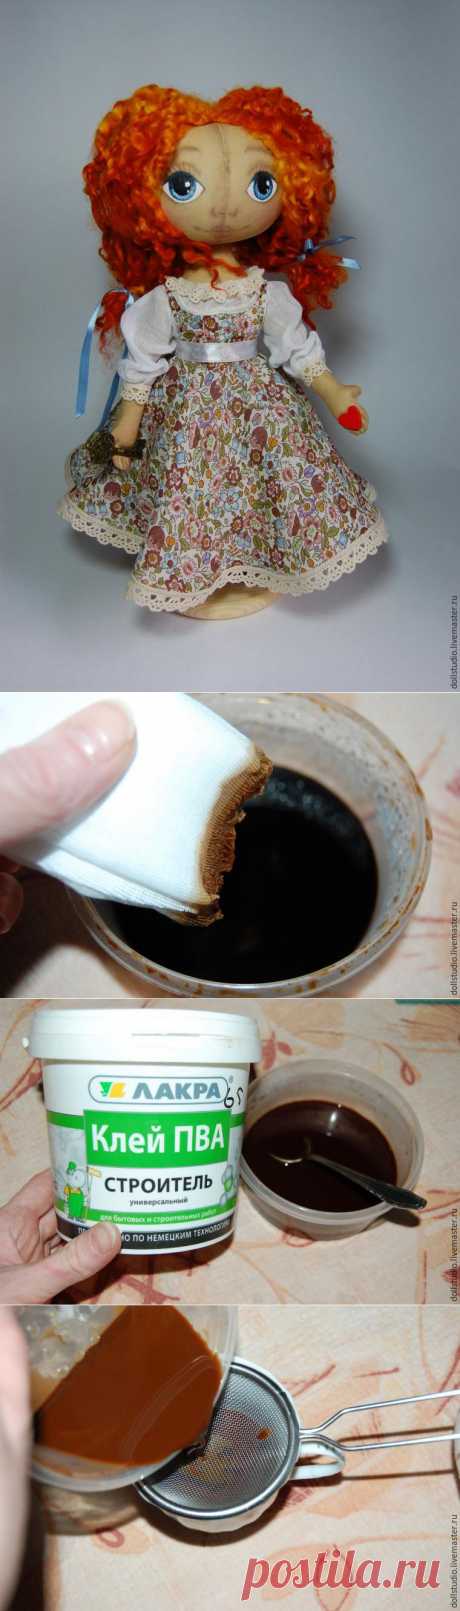 Мастер-класс: 5 способов тонирования ткани с помощью кофе - Ярмарка Мастеров - ручная работа, handmade